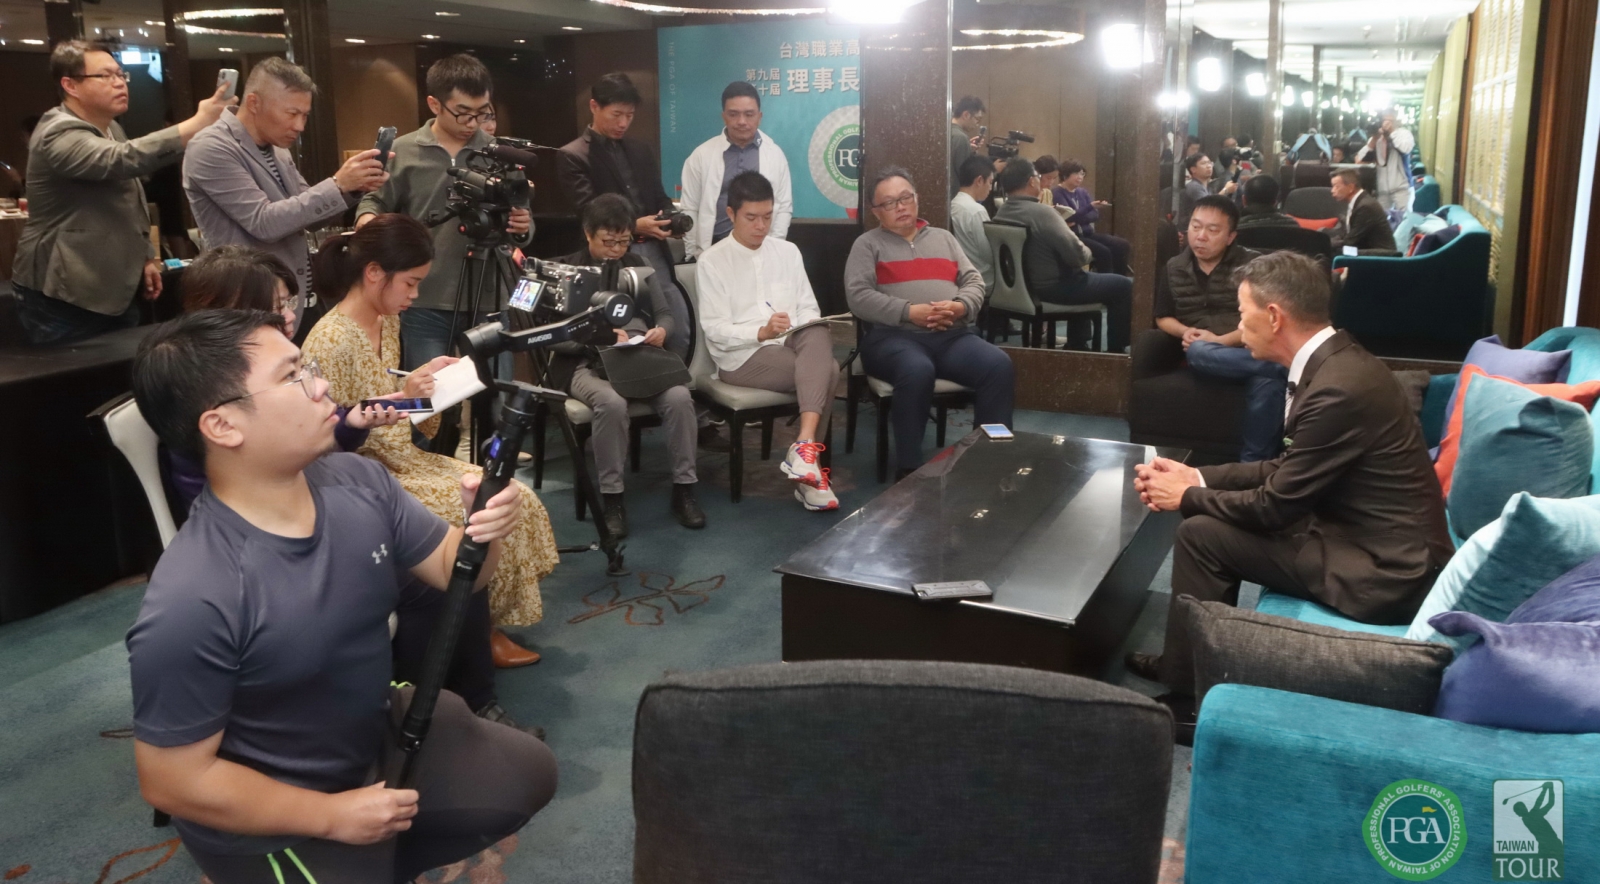 媒體聯訪台灣職業高爾夫協會第十屆新任理事長陳榮興.(鍾豐榮攝影)